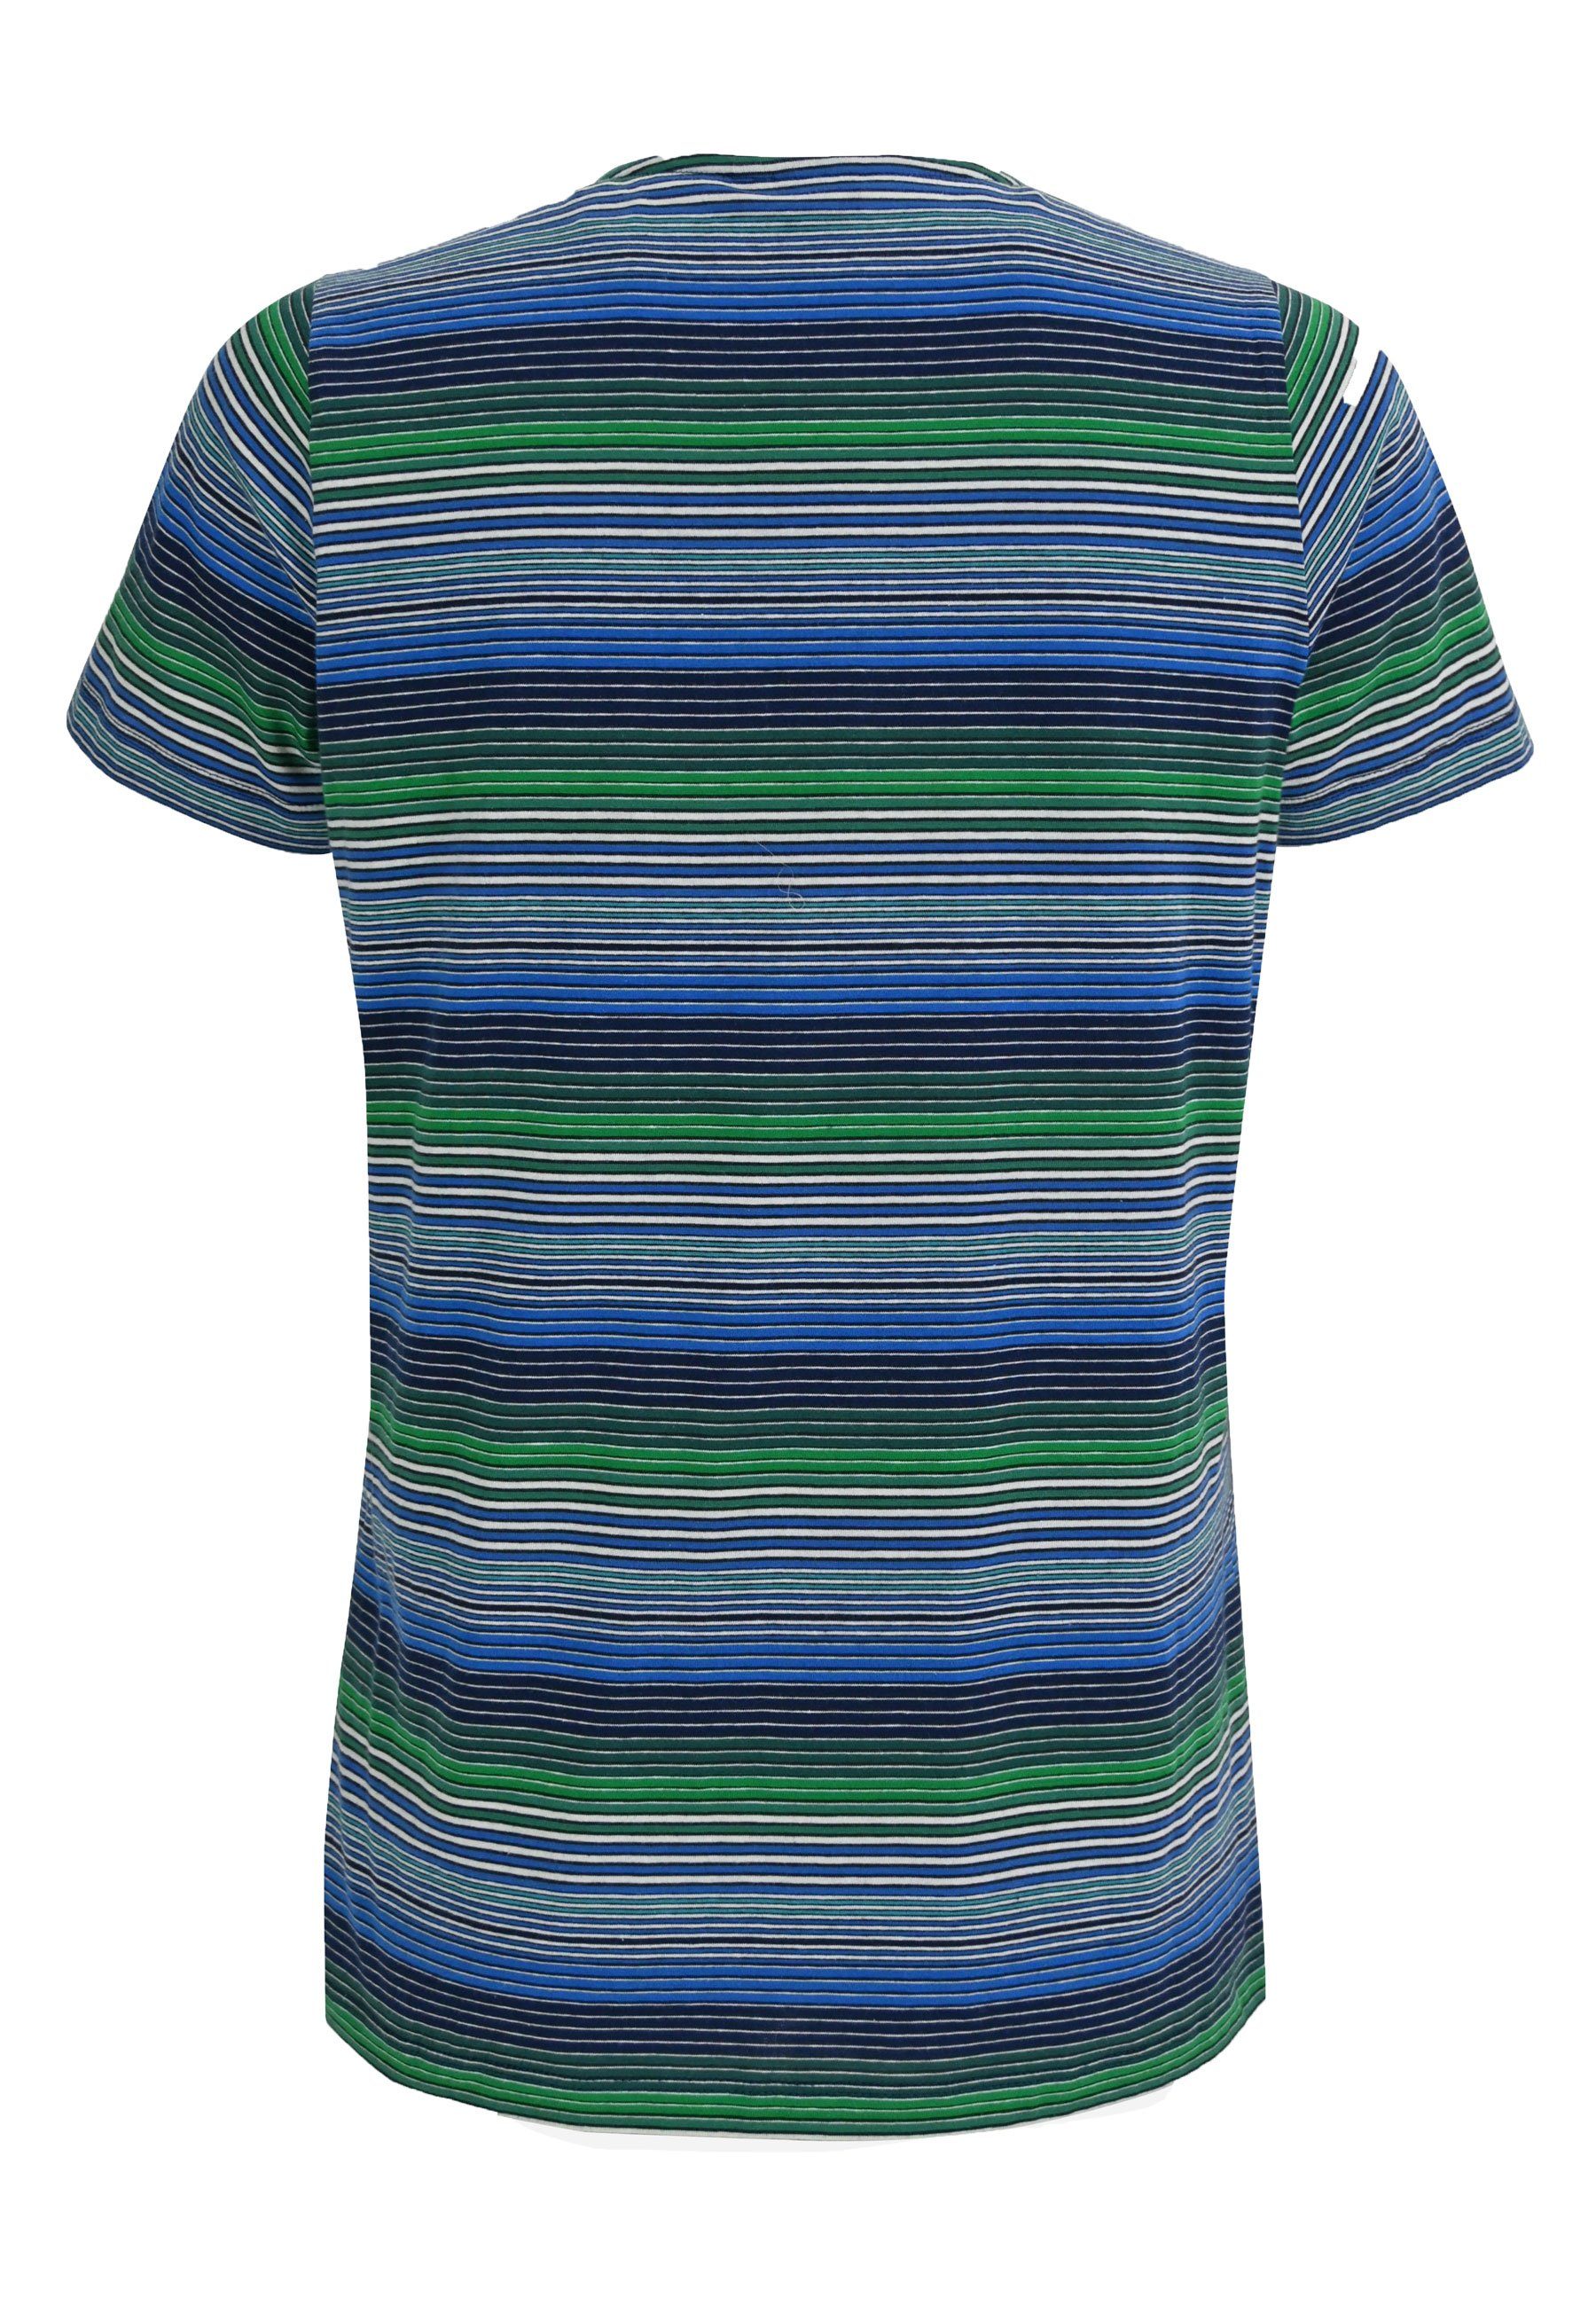 Elkline Candystriped - bunt green gestreift blue T-Shirt